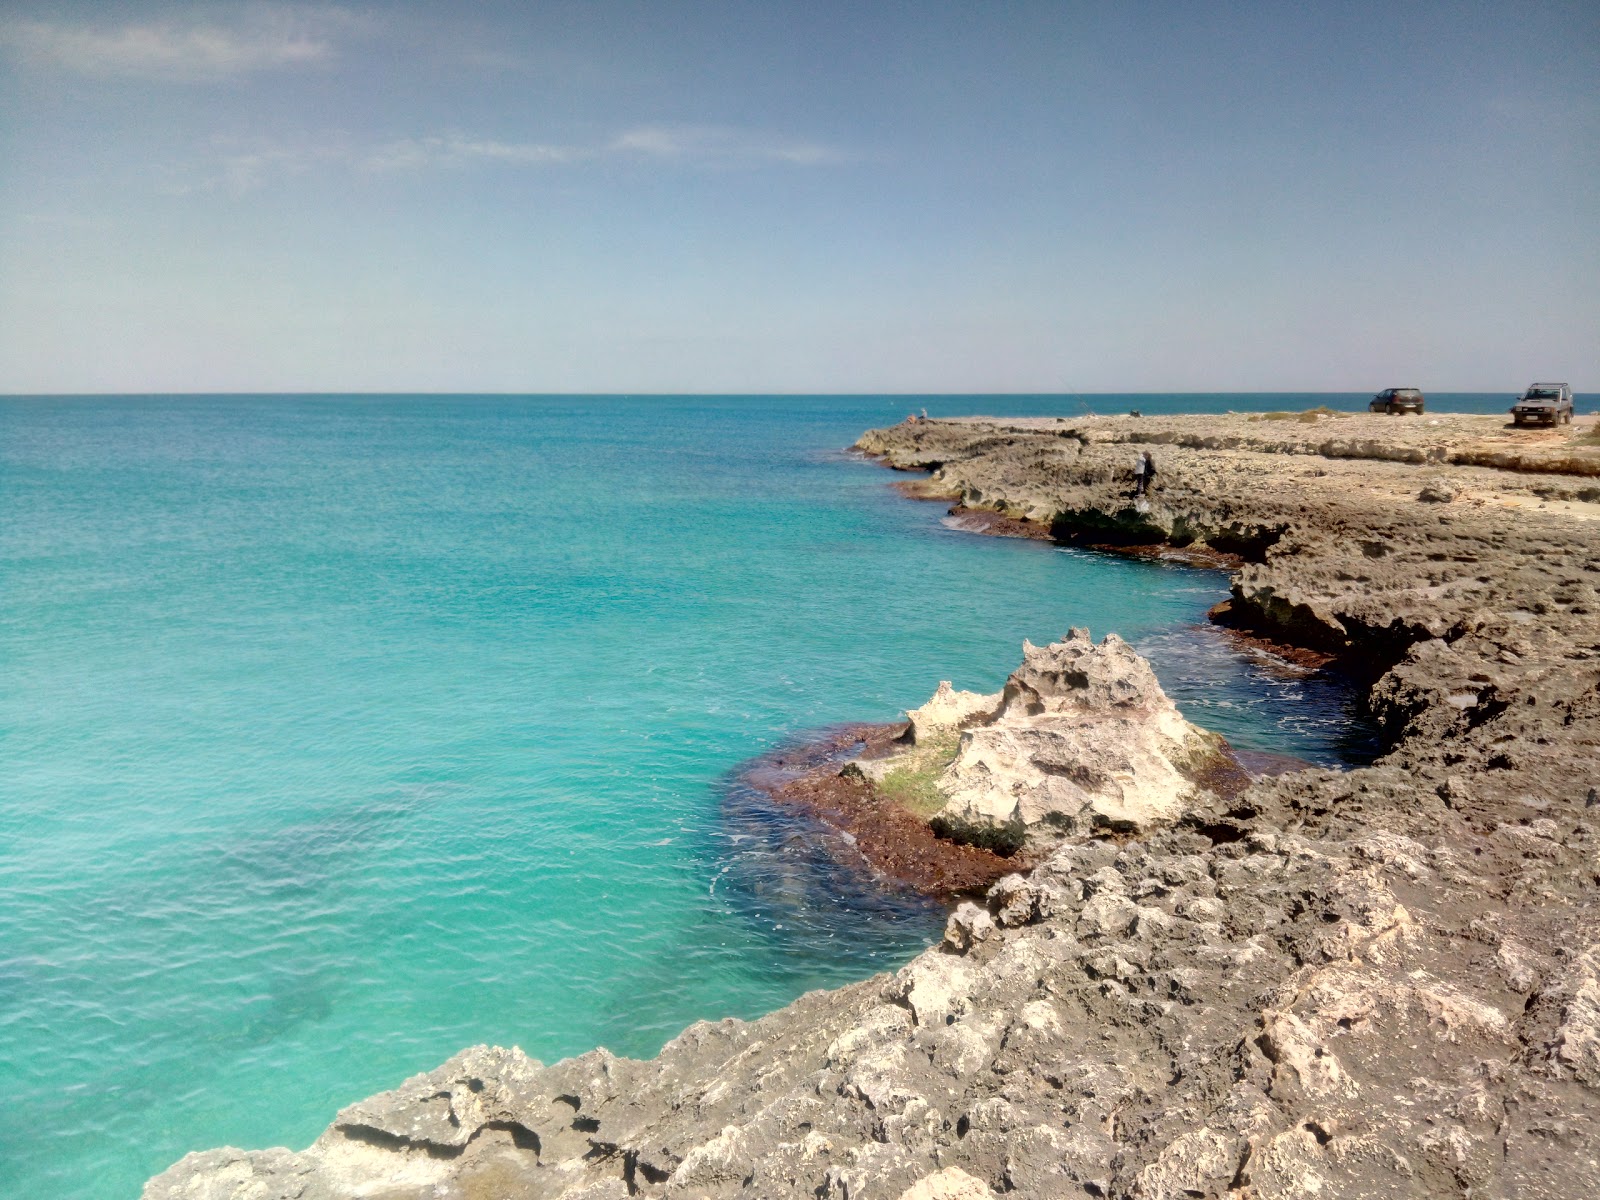 Cala Corvino beach'in fotoğrafı parlak kum ve kayalar yüzey ile